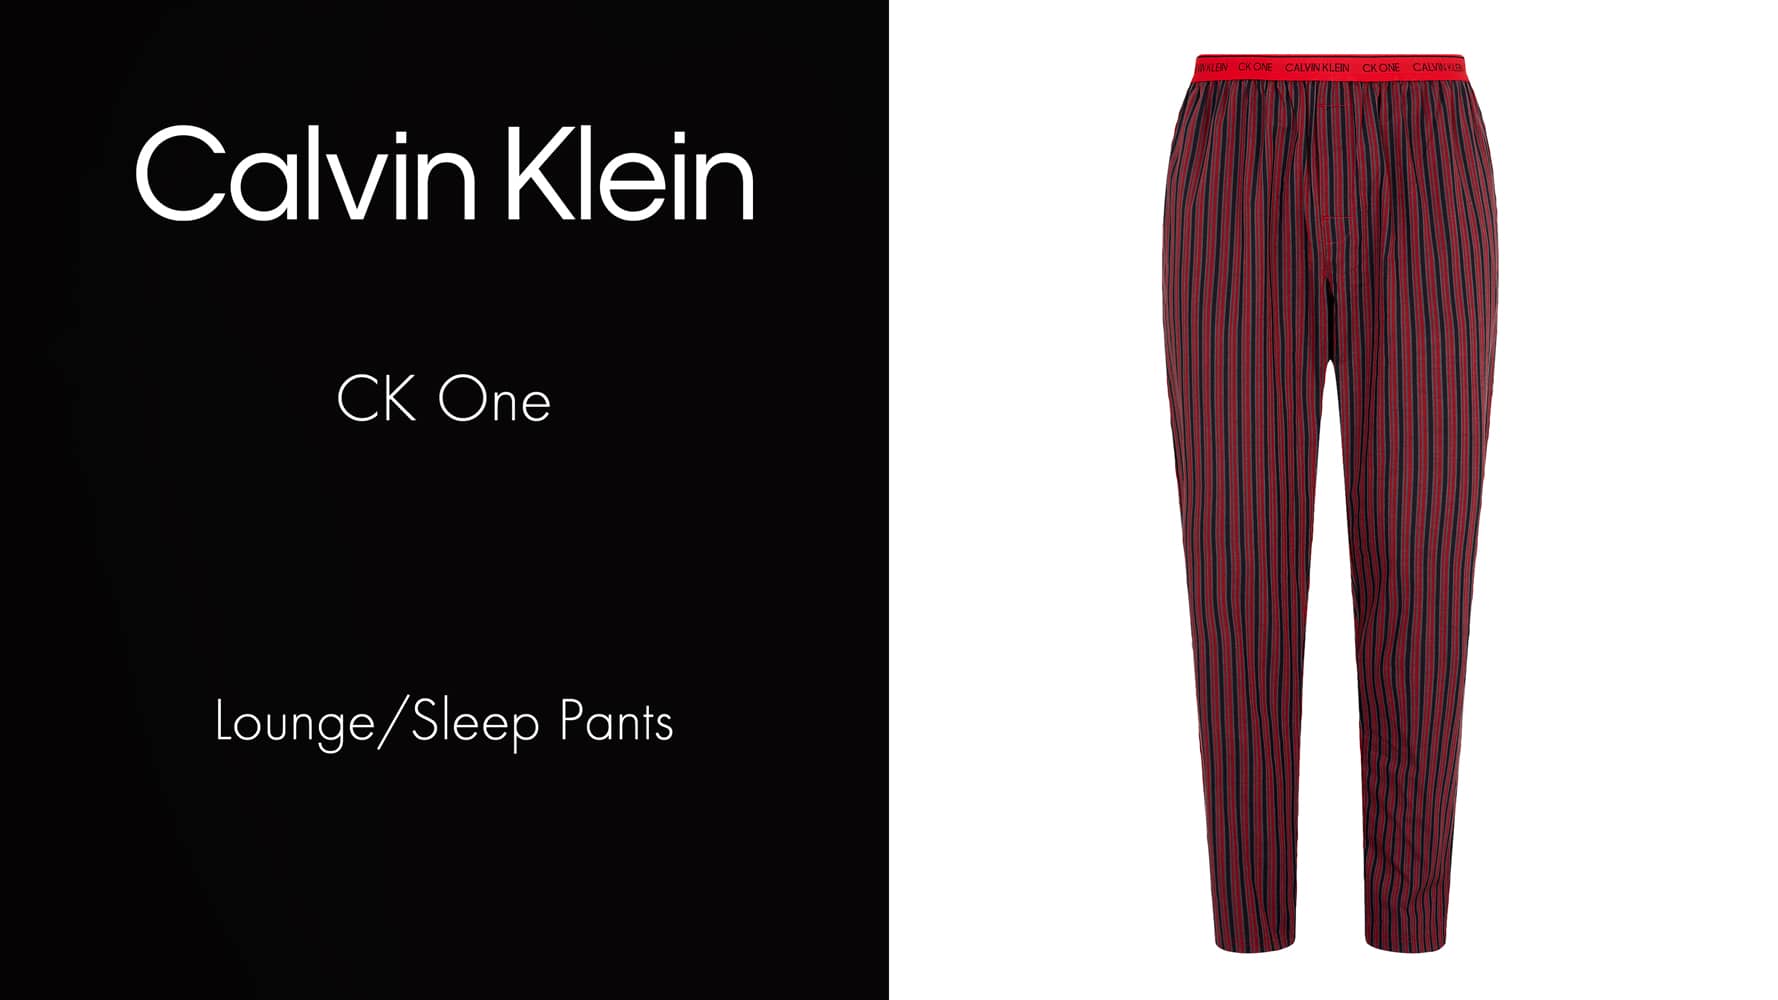 Sleep Pants - CK One